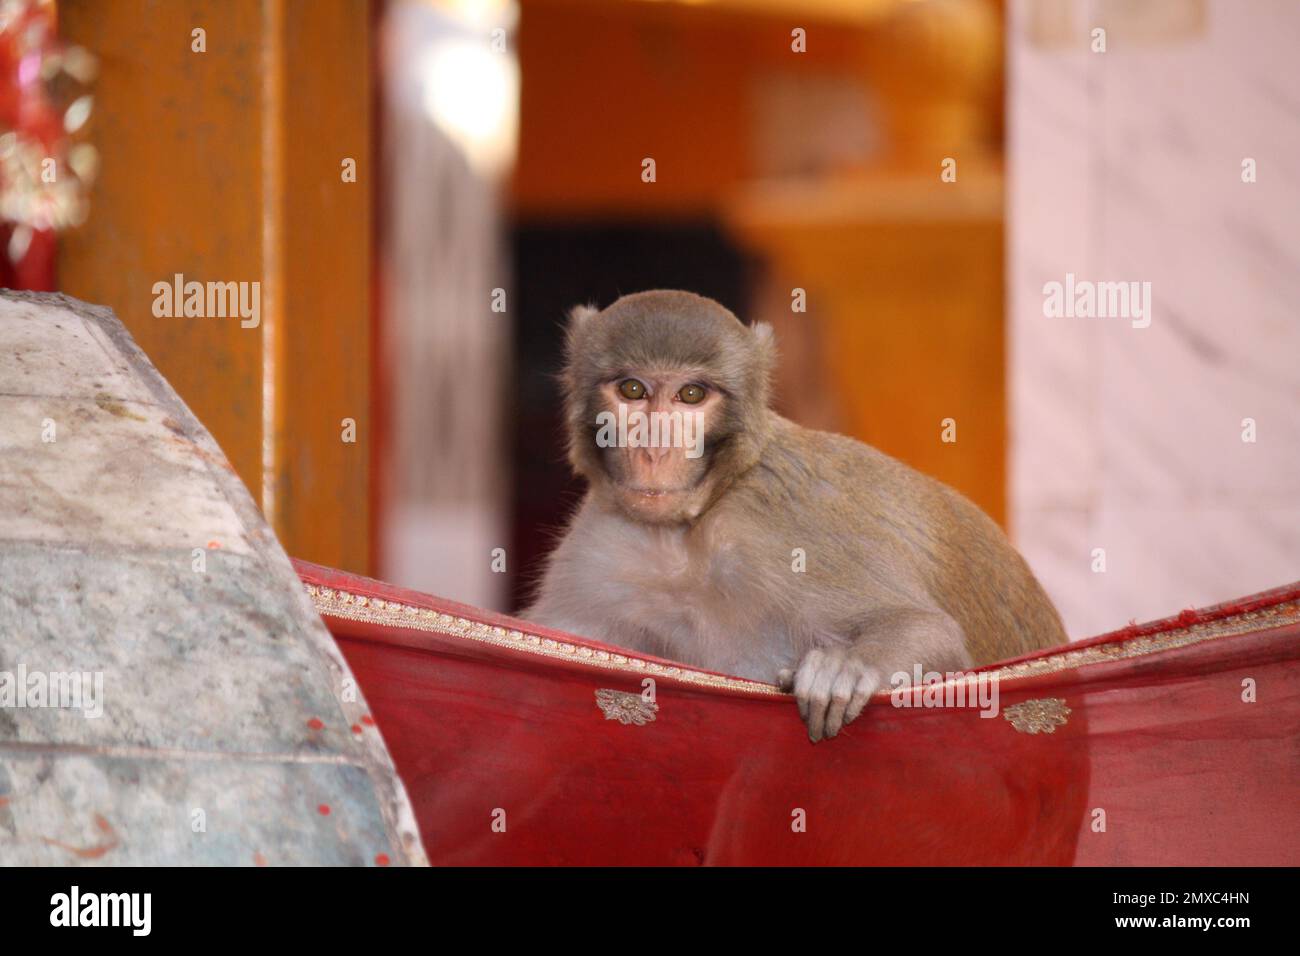 Rhesus macaque (Macaca mulatta) in einem Tempel auf der Suche nach Essen : (Pix Sanjiv Shukla) Stockfoto